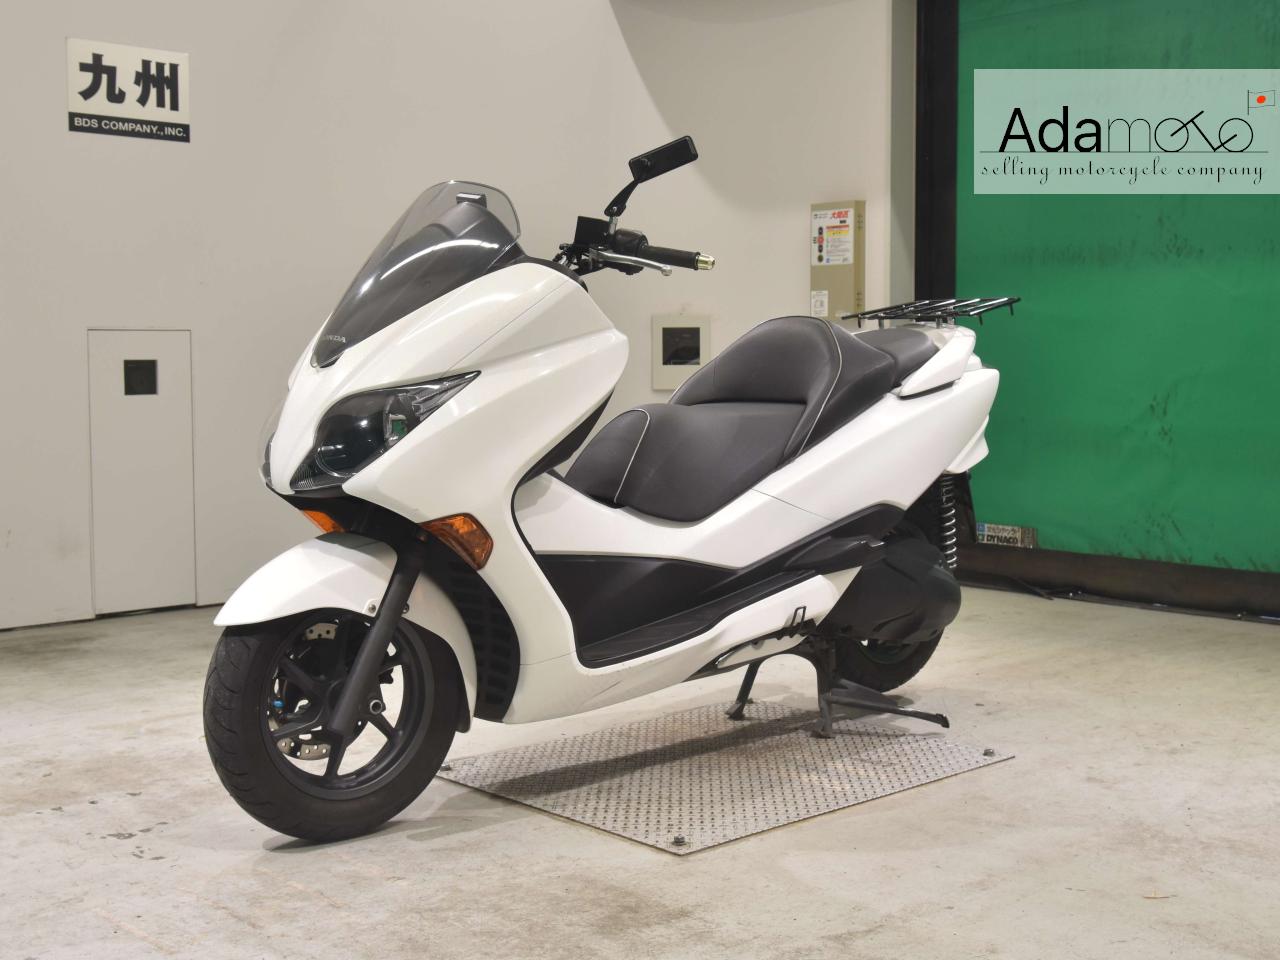 Honda FORZA Z 2 - Adamoto - Motorcycles from Japan